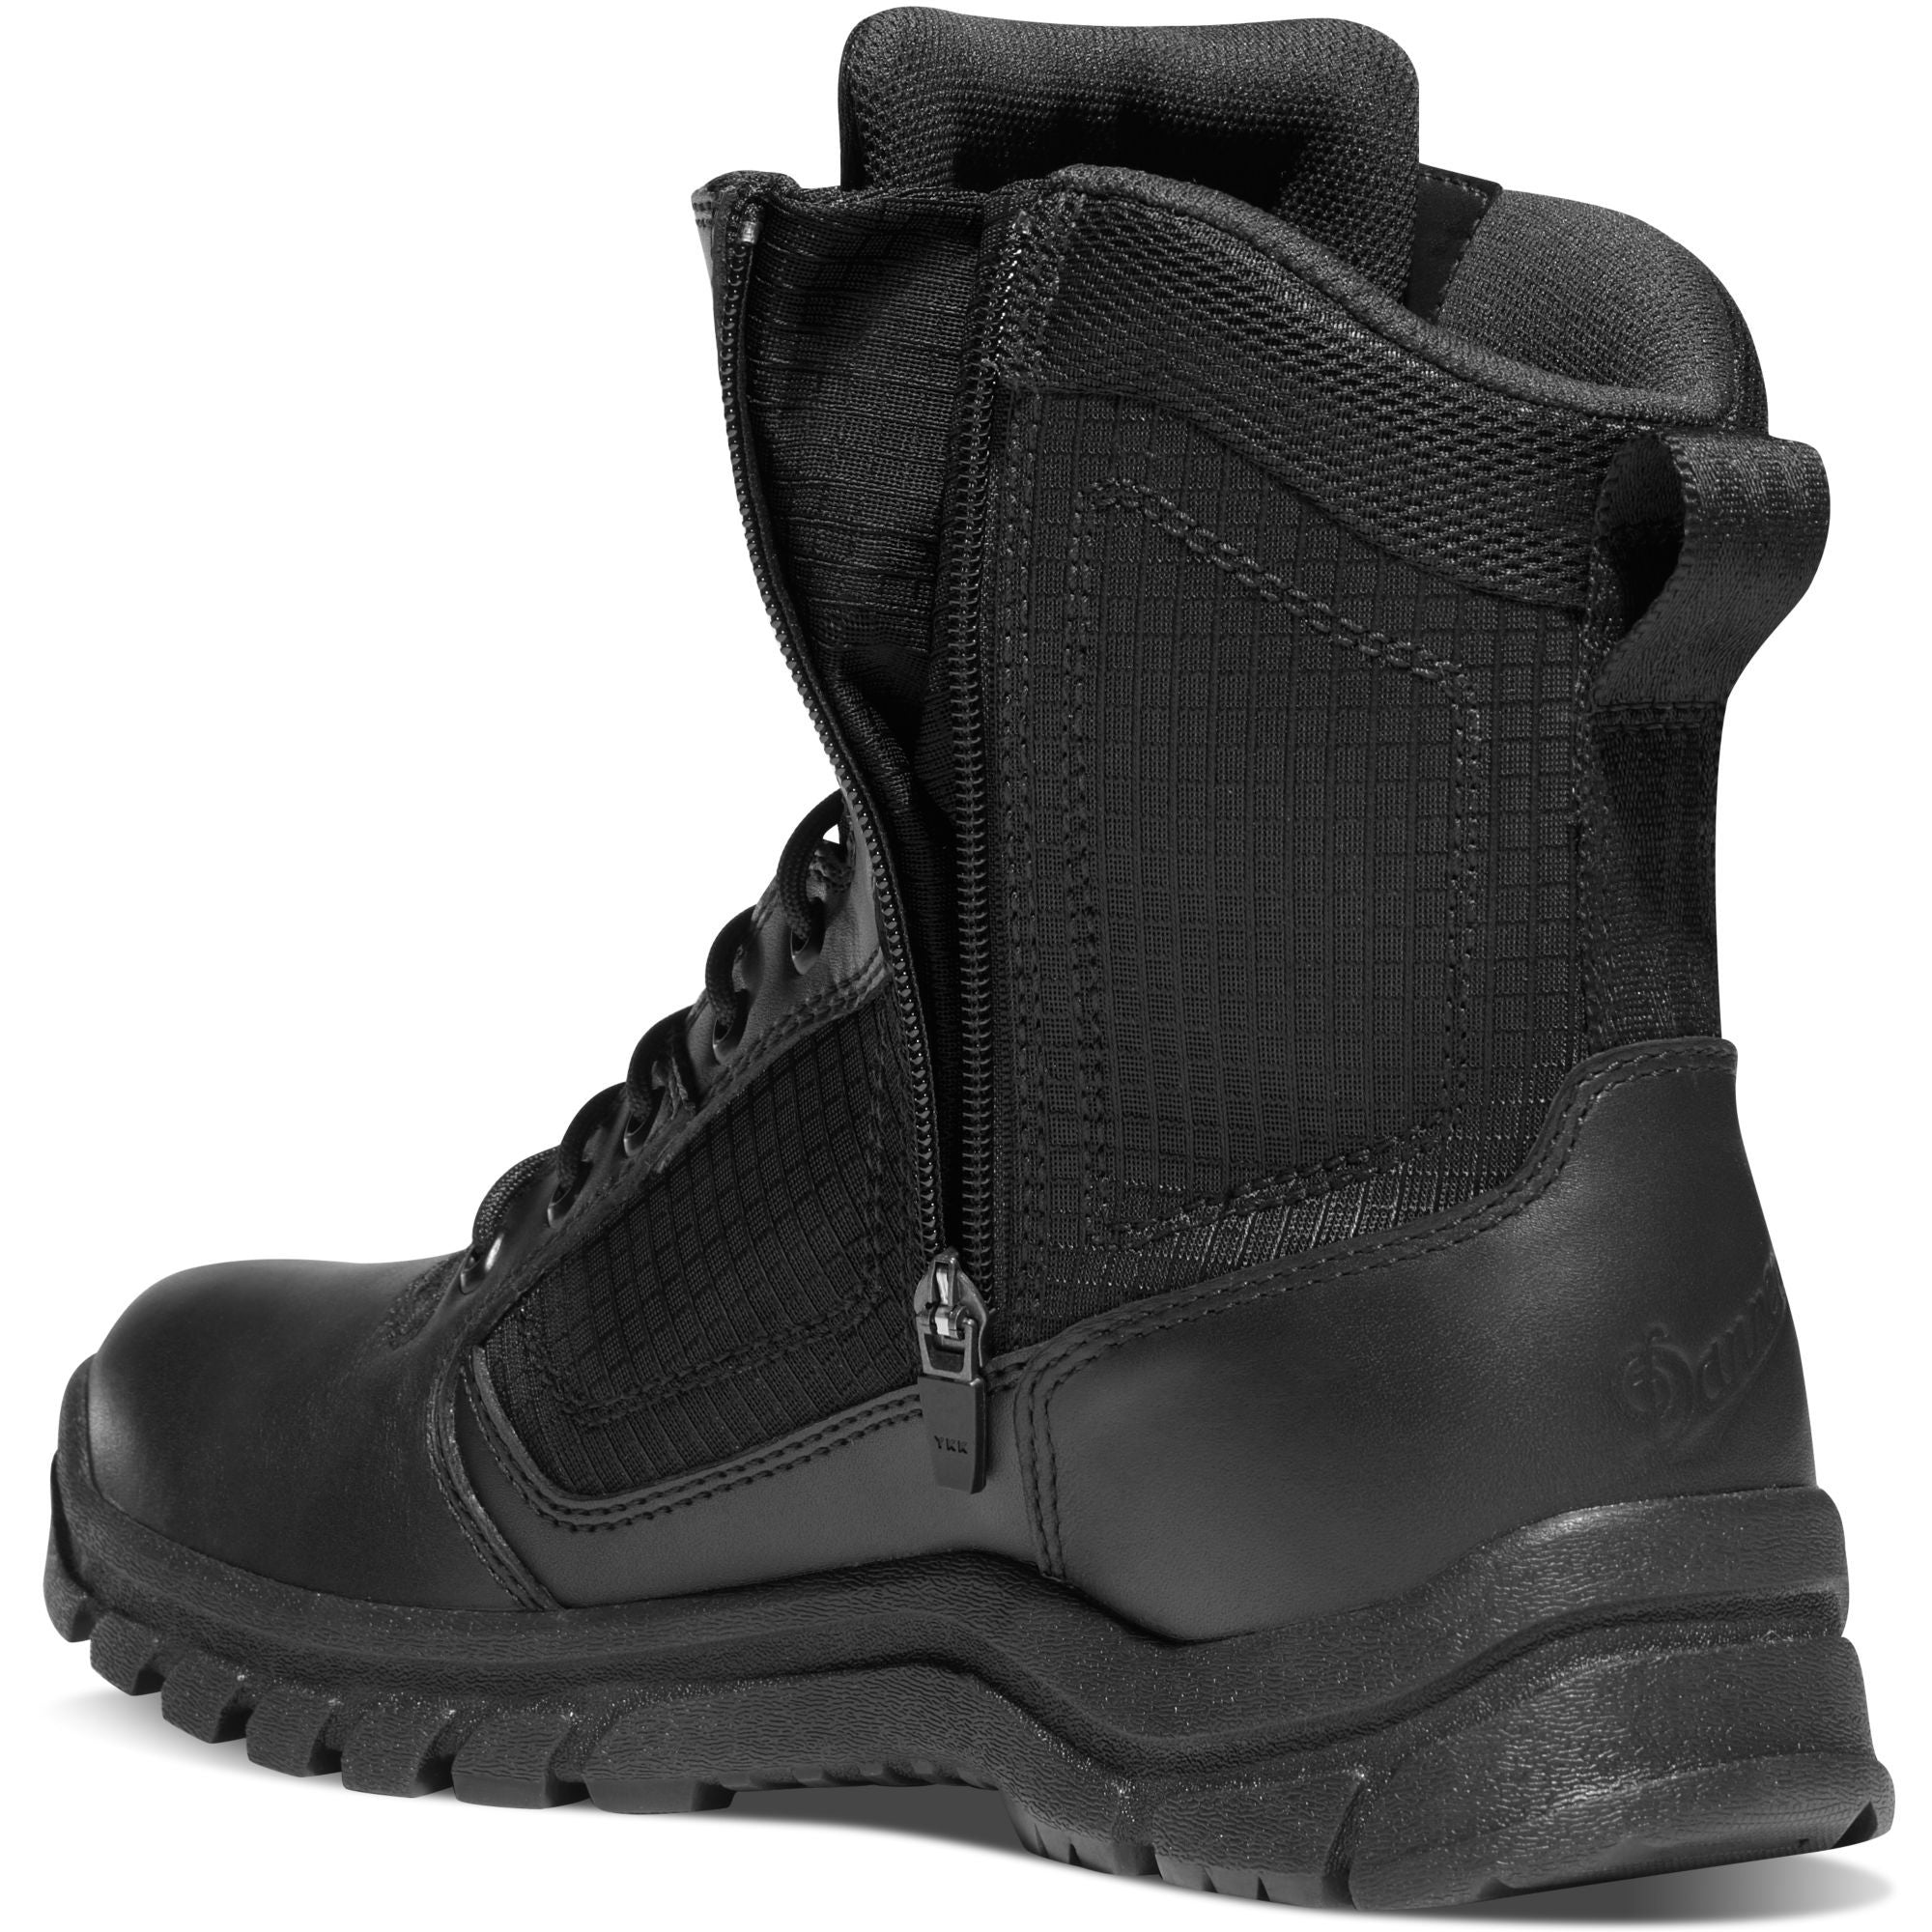 Danner Men's Lookout 8" Side Zip Waterproof Duty Boot - Black - 23824  - Overlook Boots